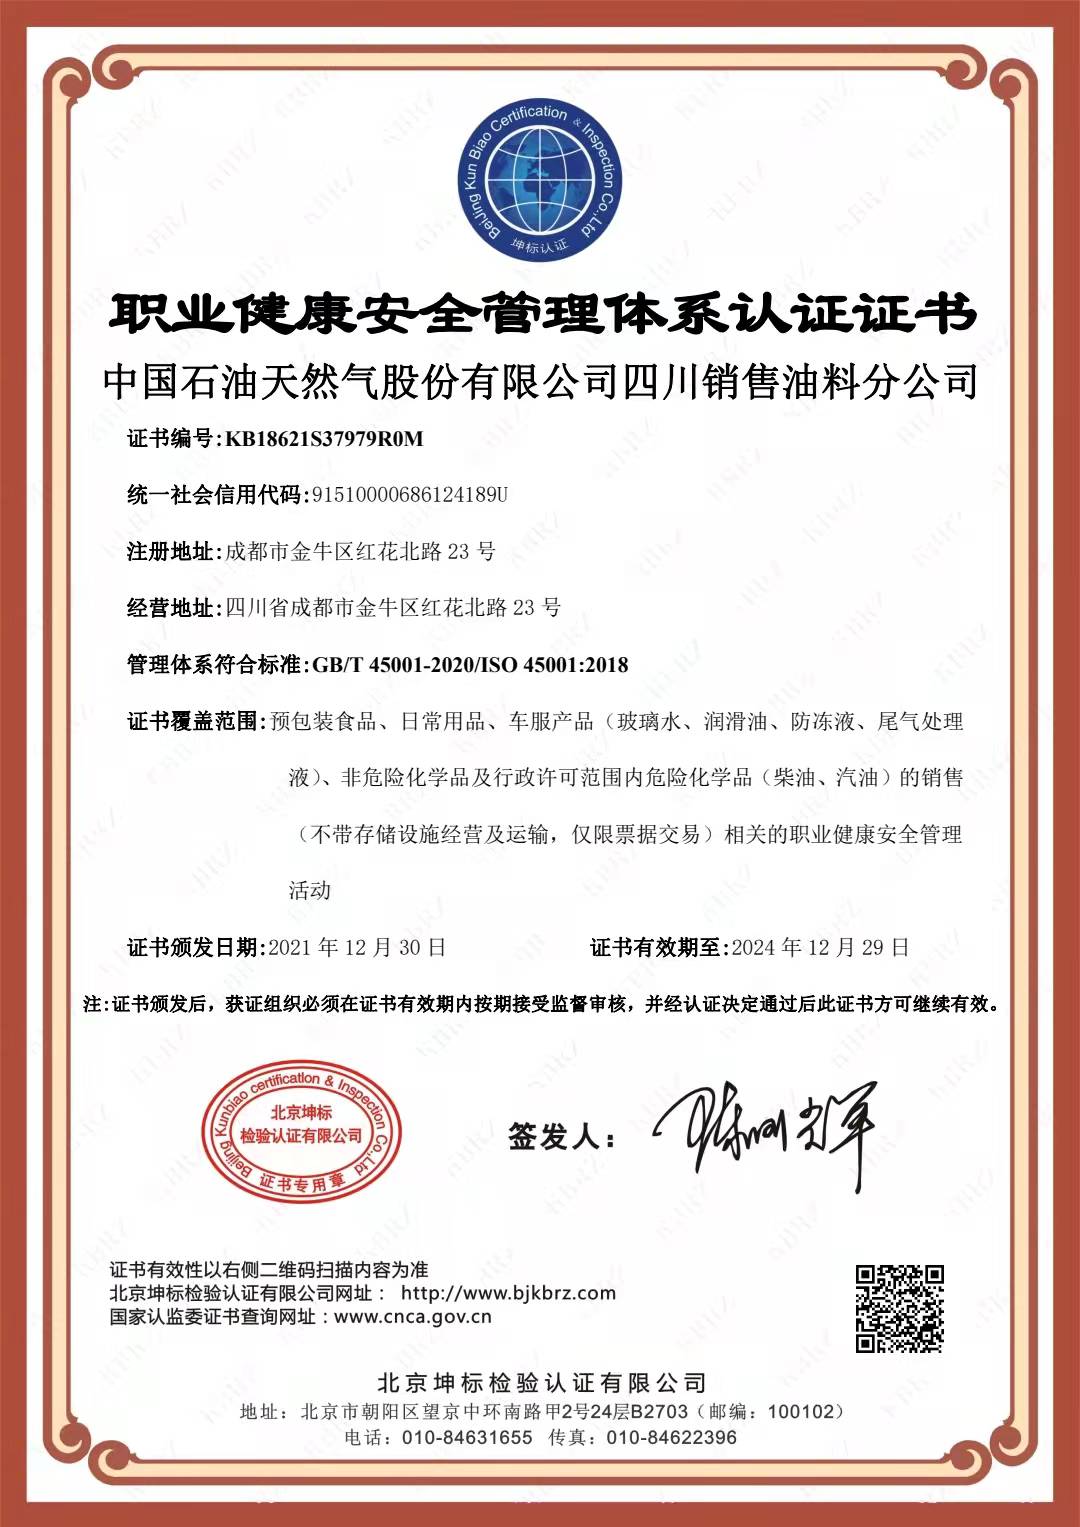 恭喜中国石油 天然气股份有限公司顺利通过审核取得ISO45001,ISO14001,两体系认证证书